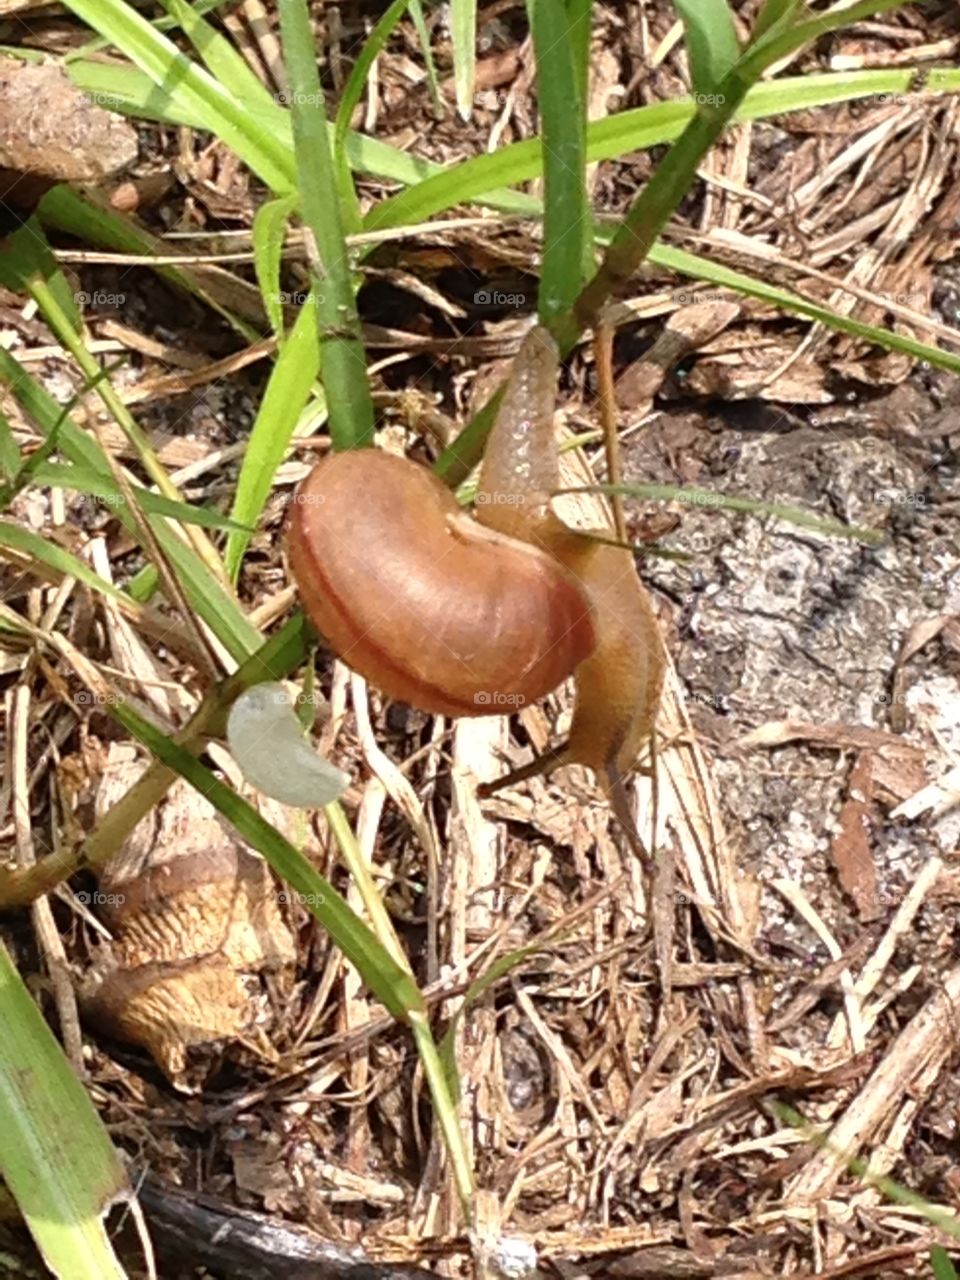 Snail garden